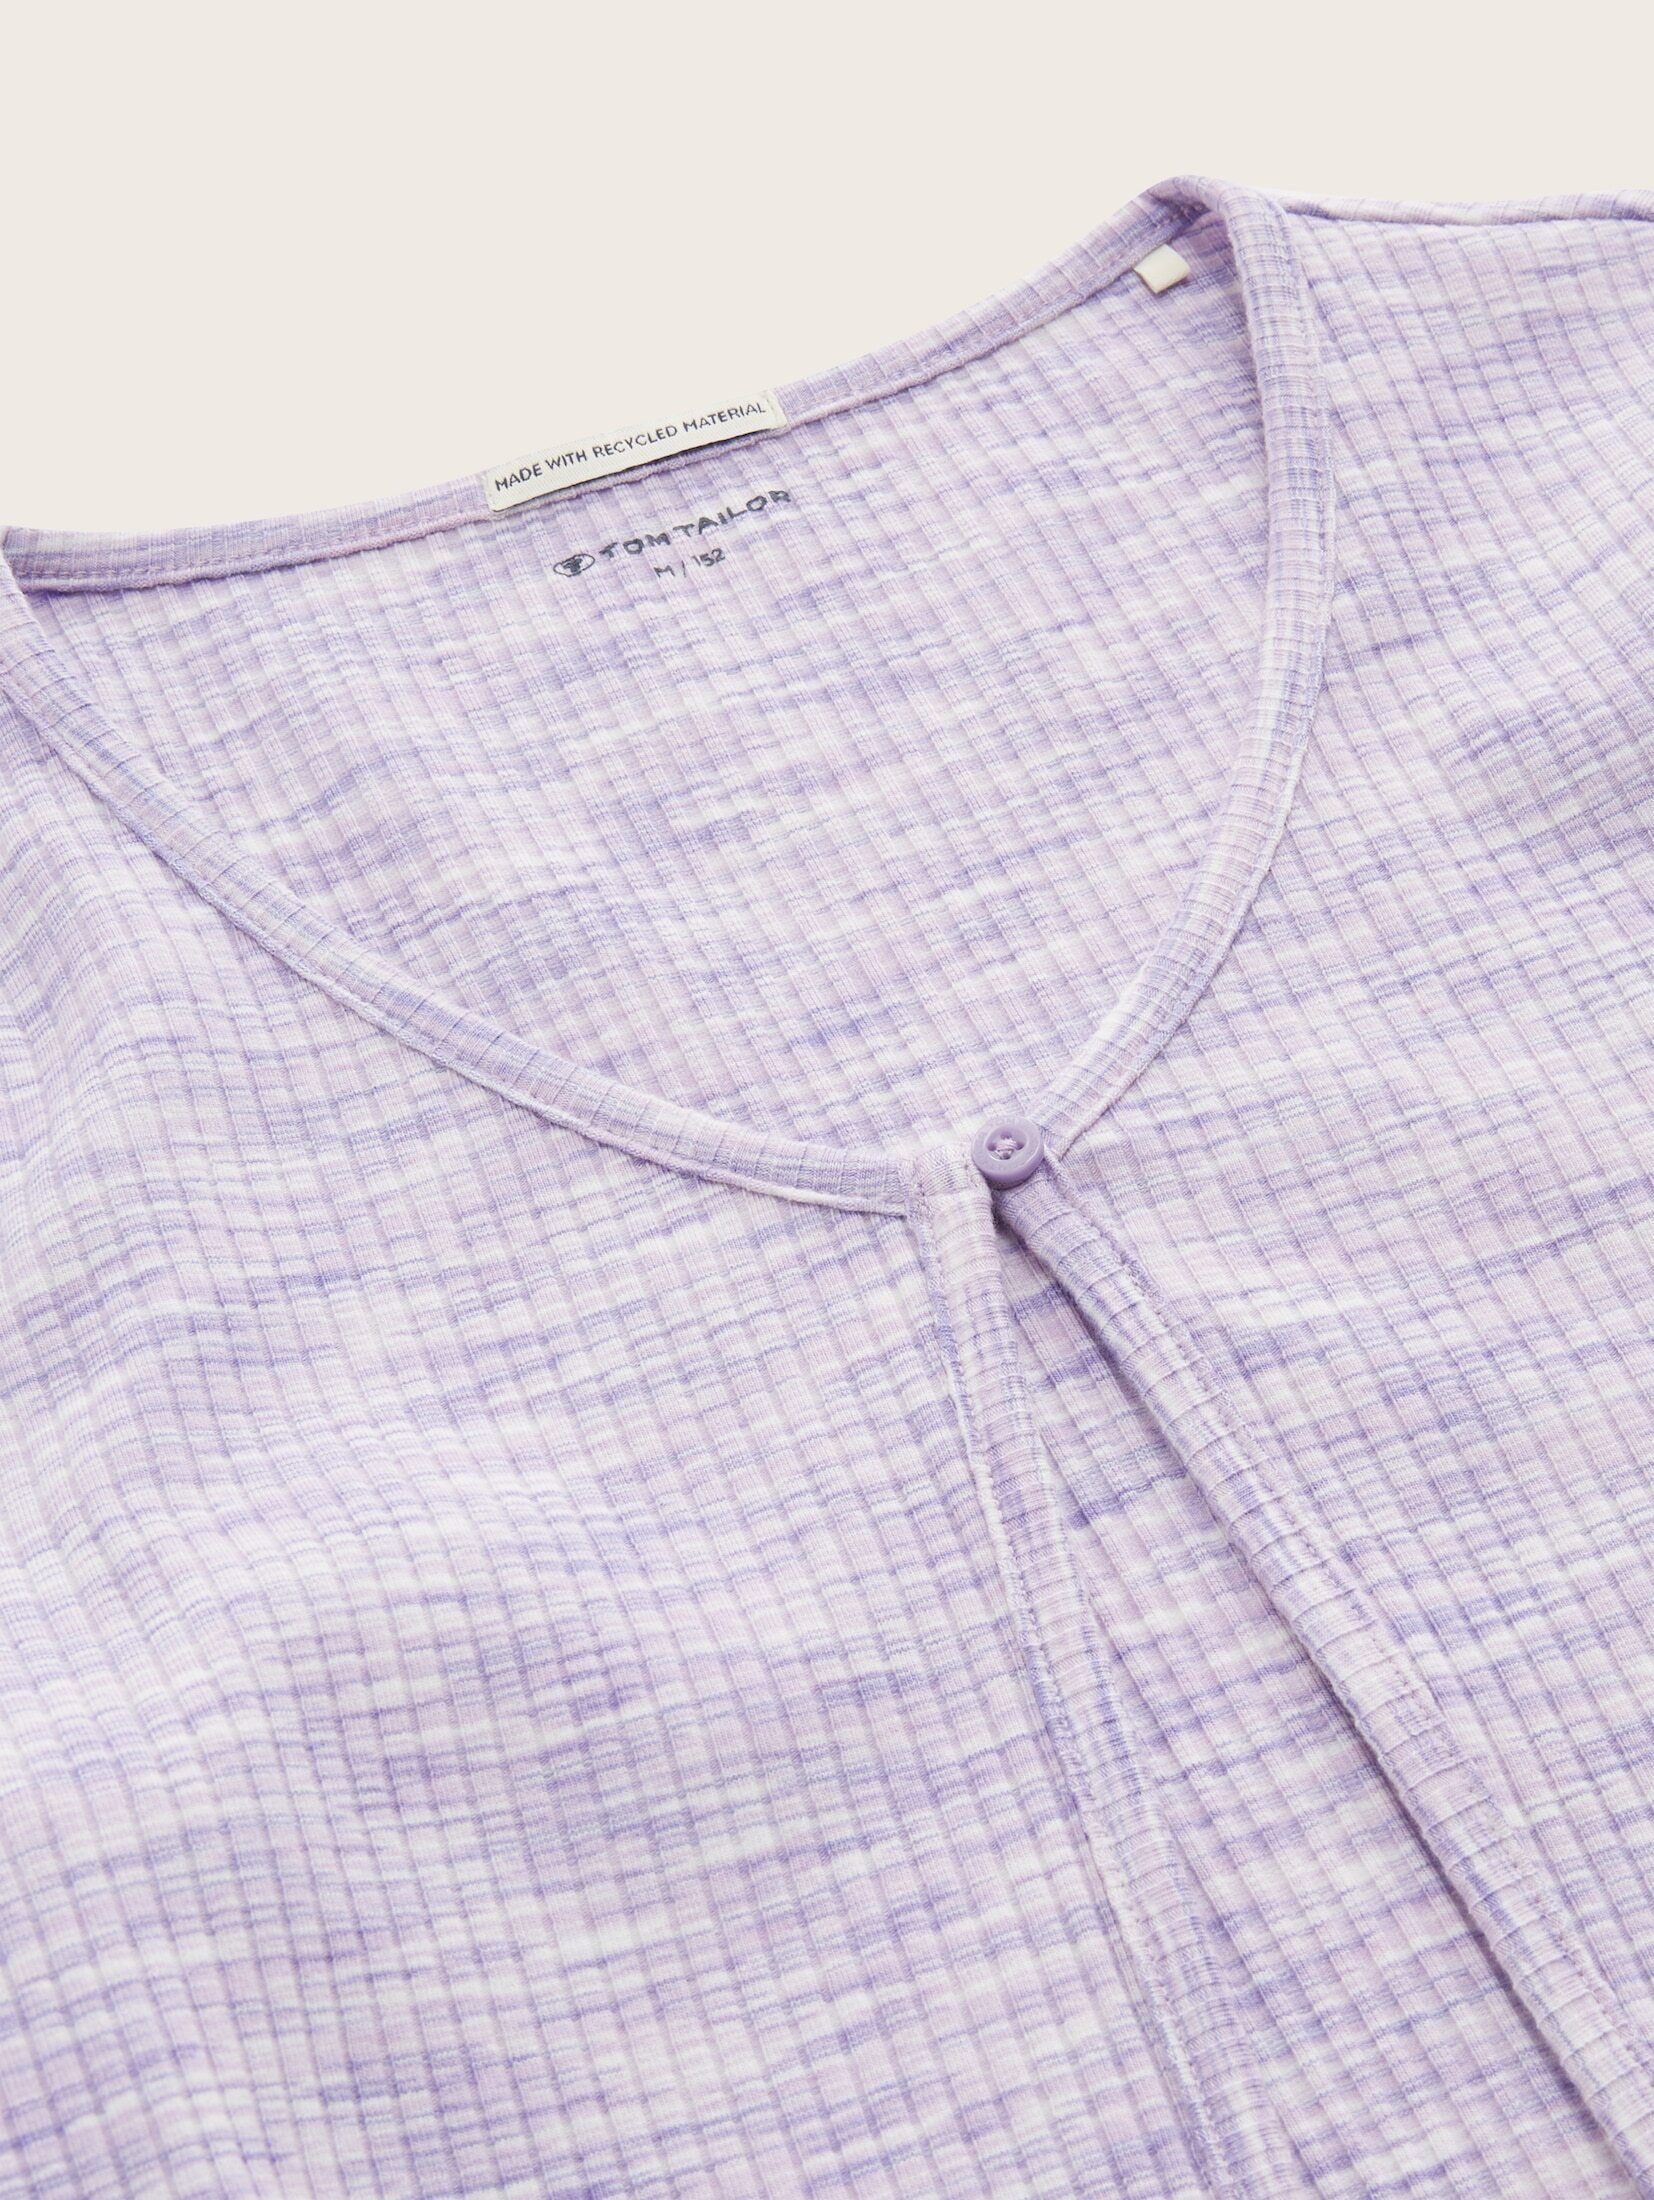 TAILOR Melange TOM dye lilac T-Shirt Cardigan Optik space in